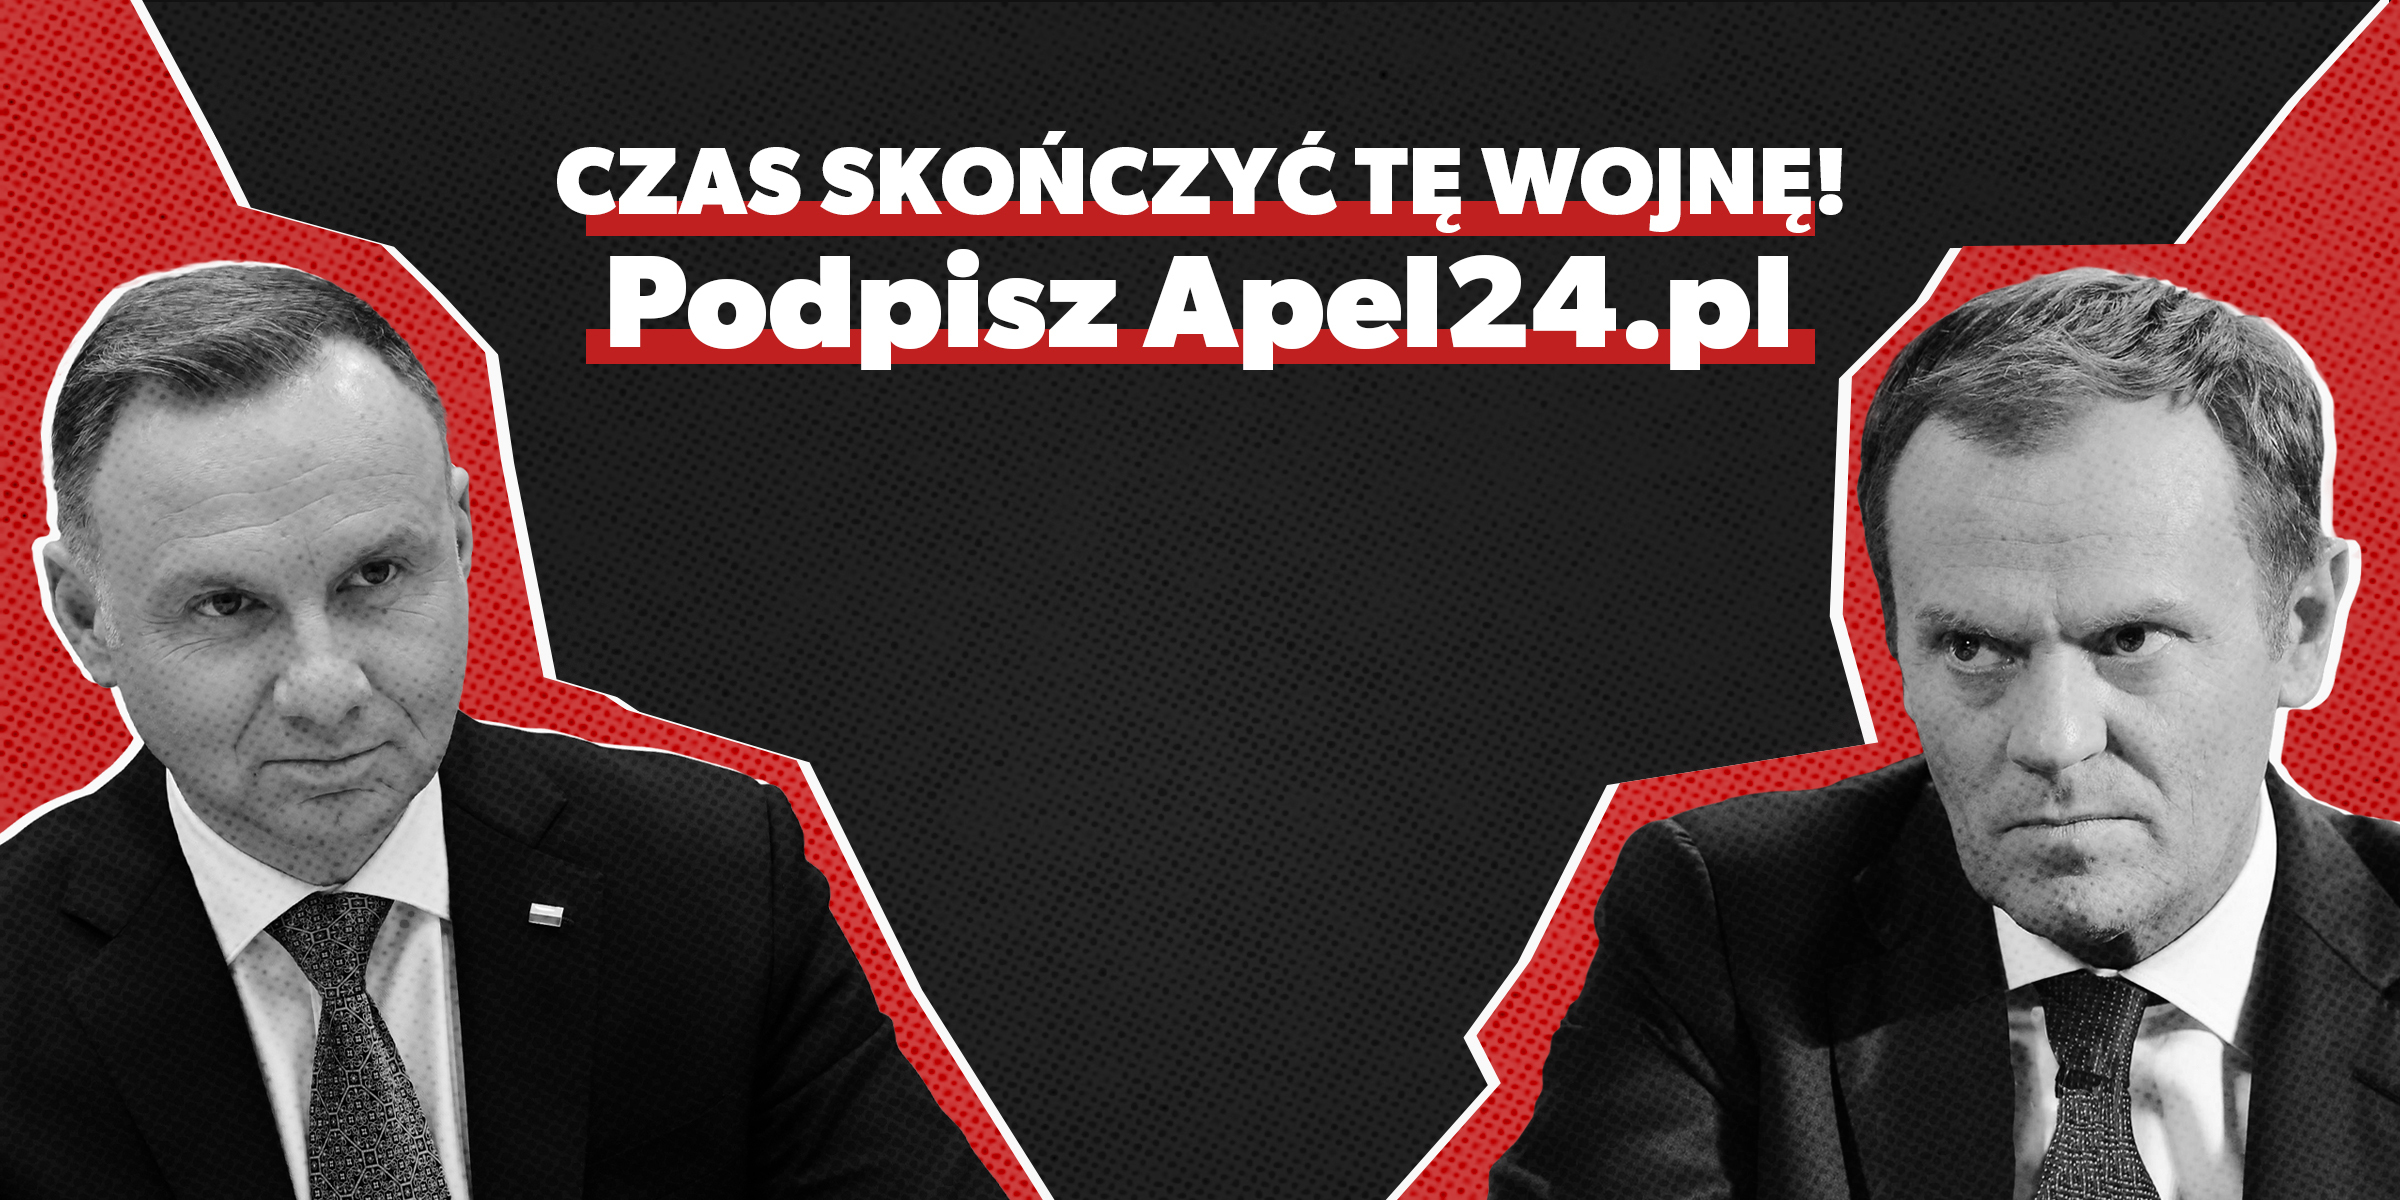 Czas skończyć tę wojnę! Podpisz Apel24.pl